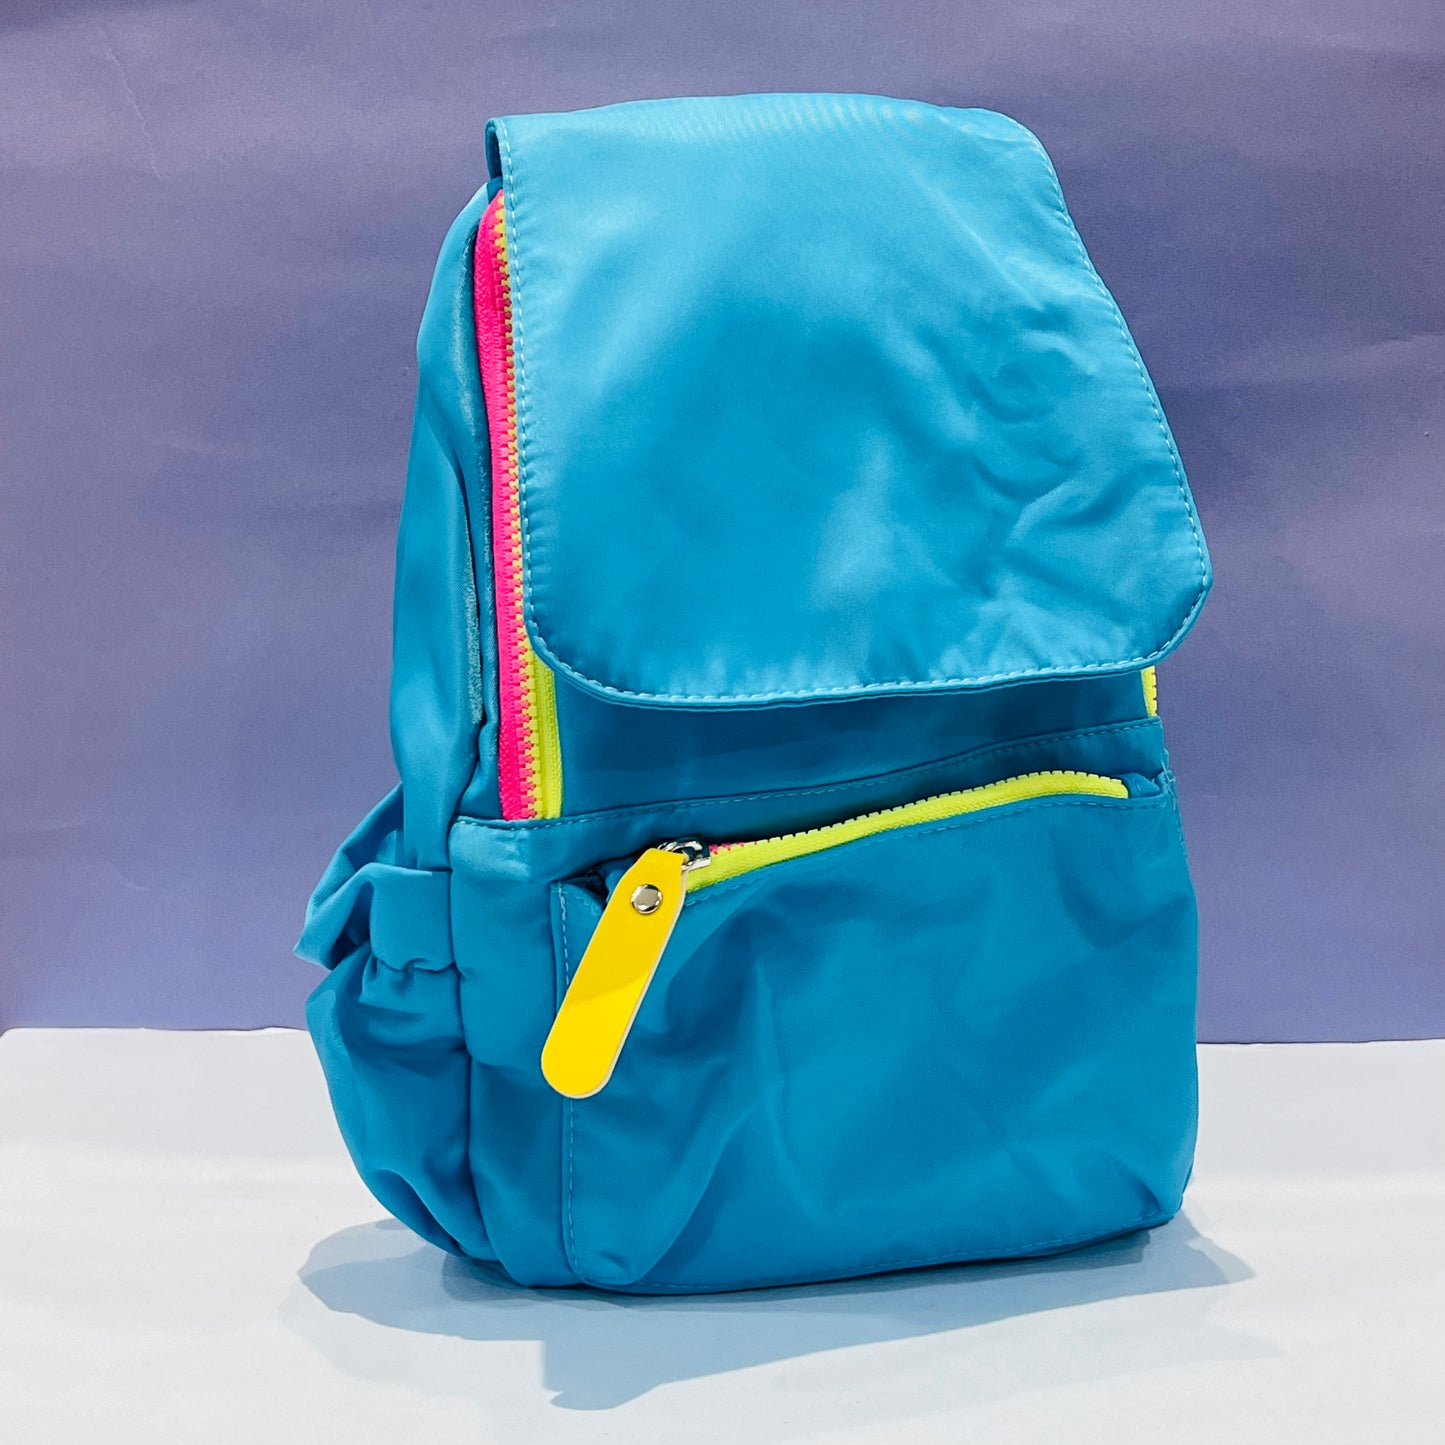 Trending Neon Backpack